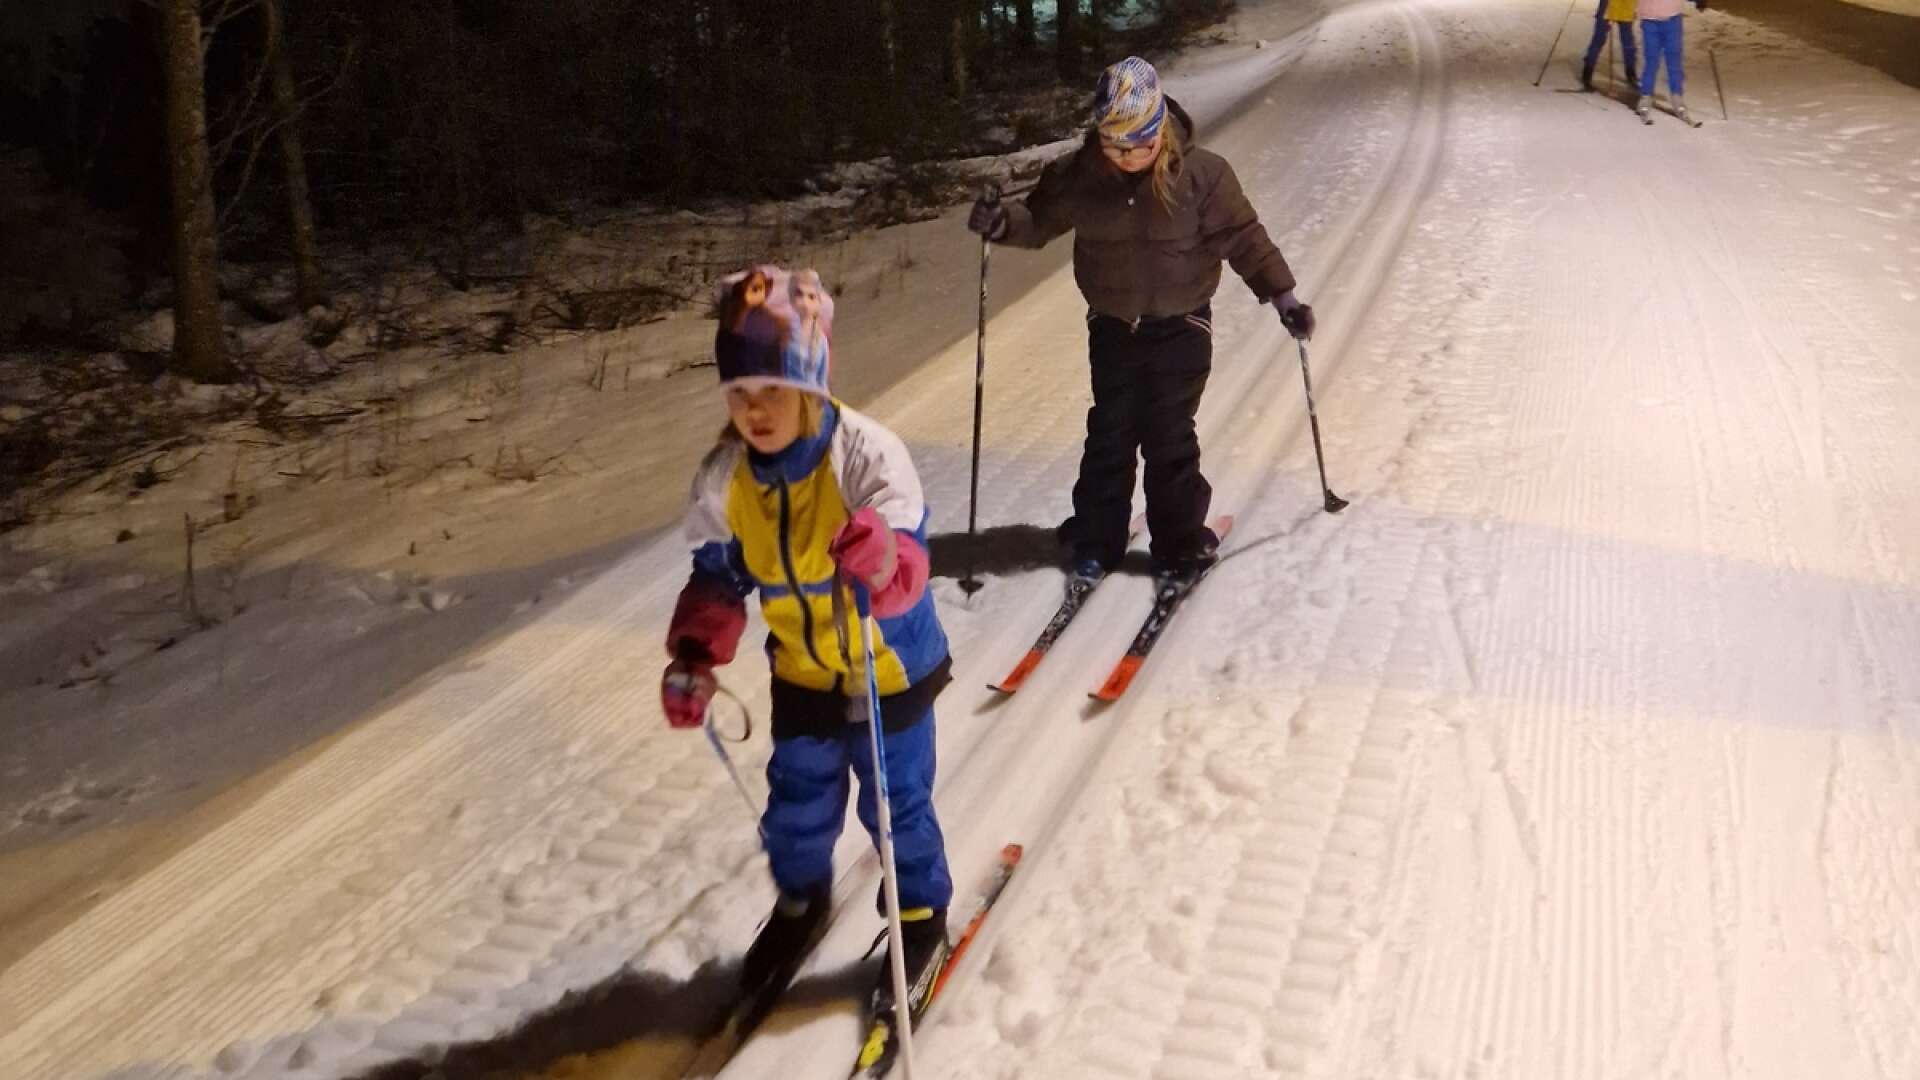 På tisdagskvällarna samlas ett gäng barn vid skidstugan för att åka längdskidor tillsammans.